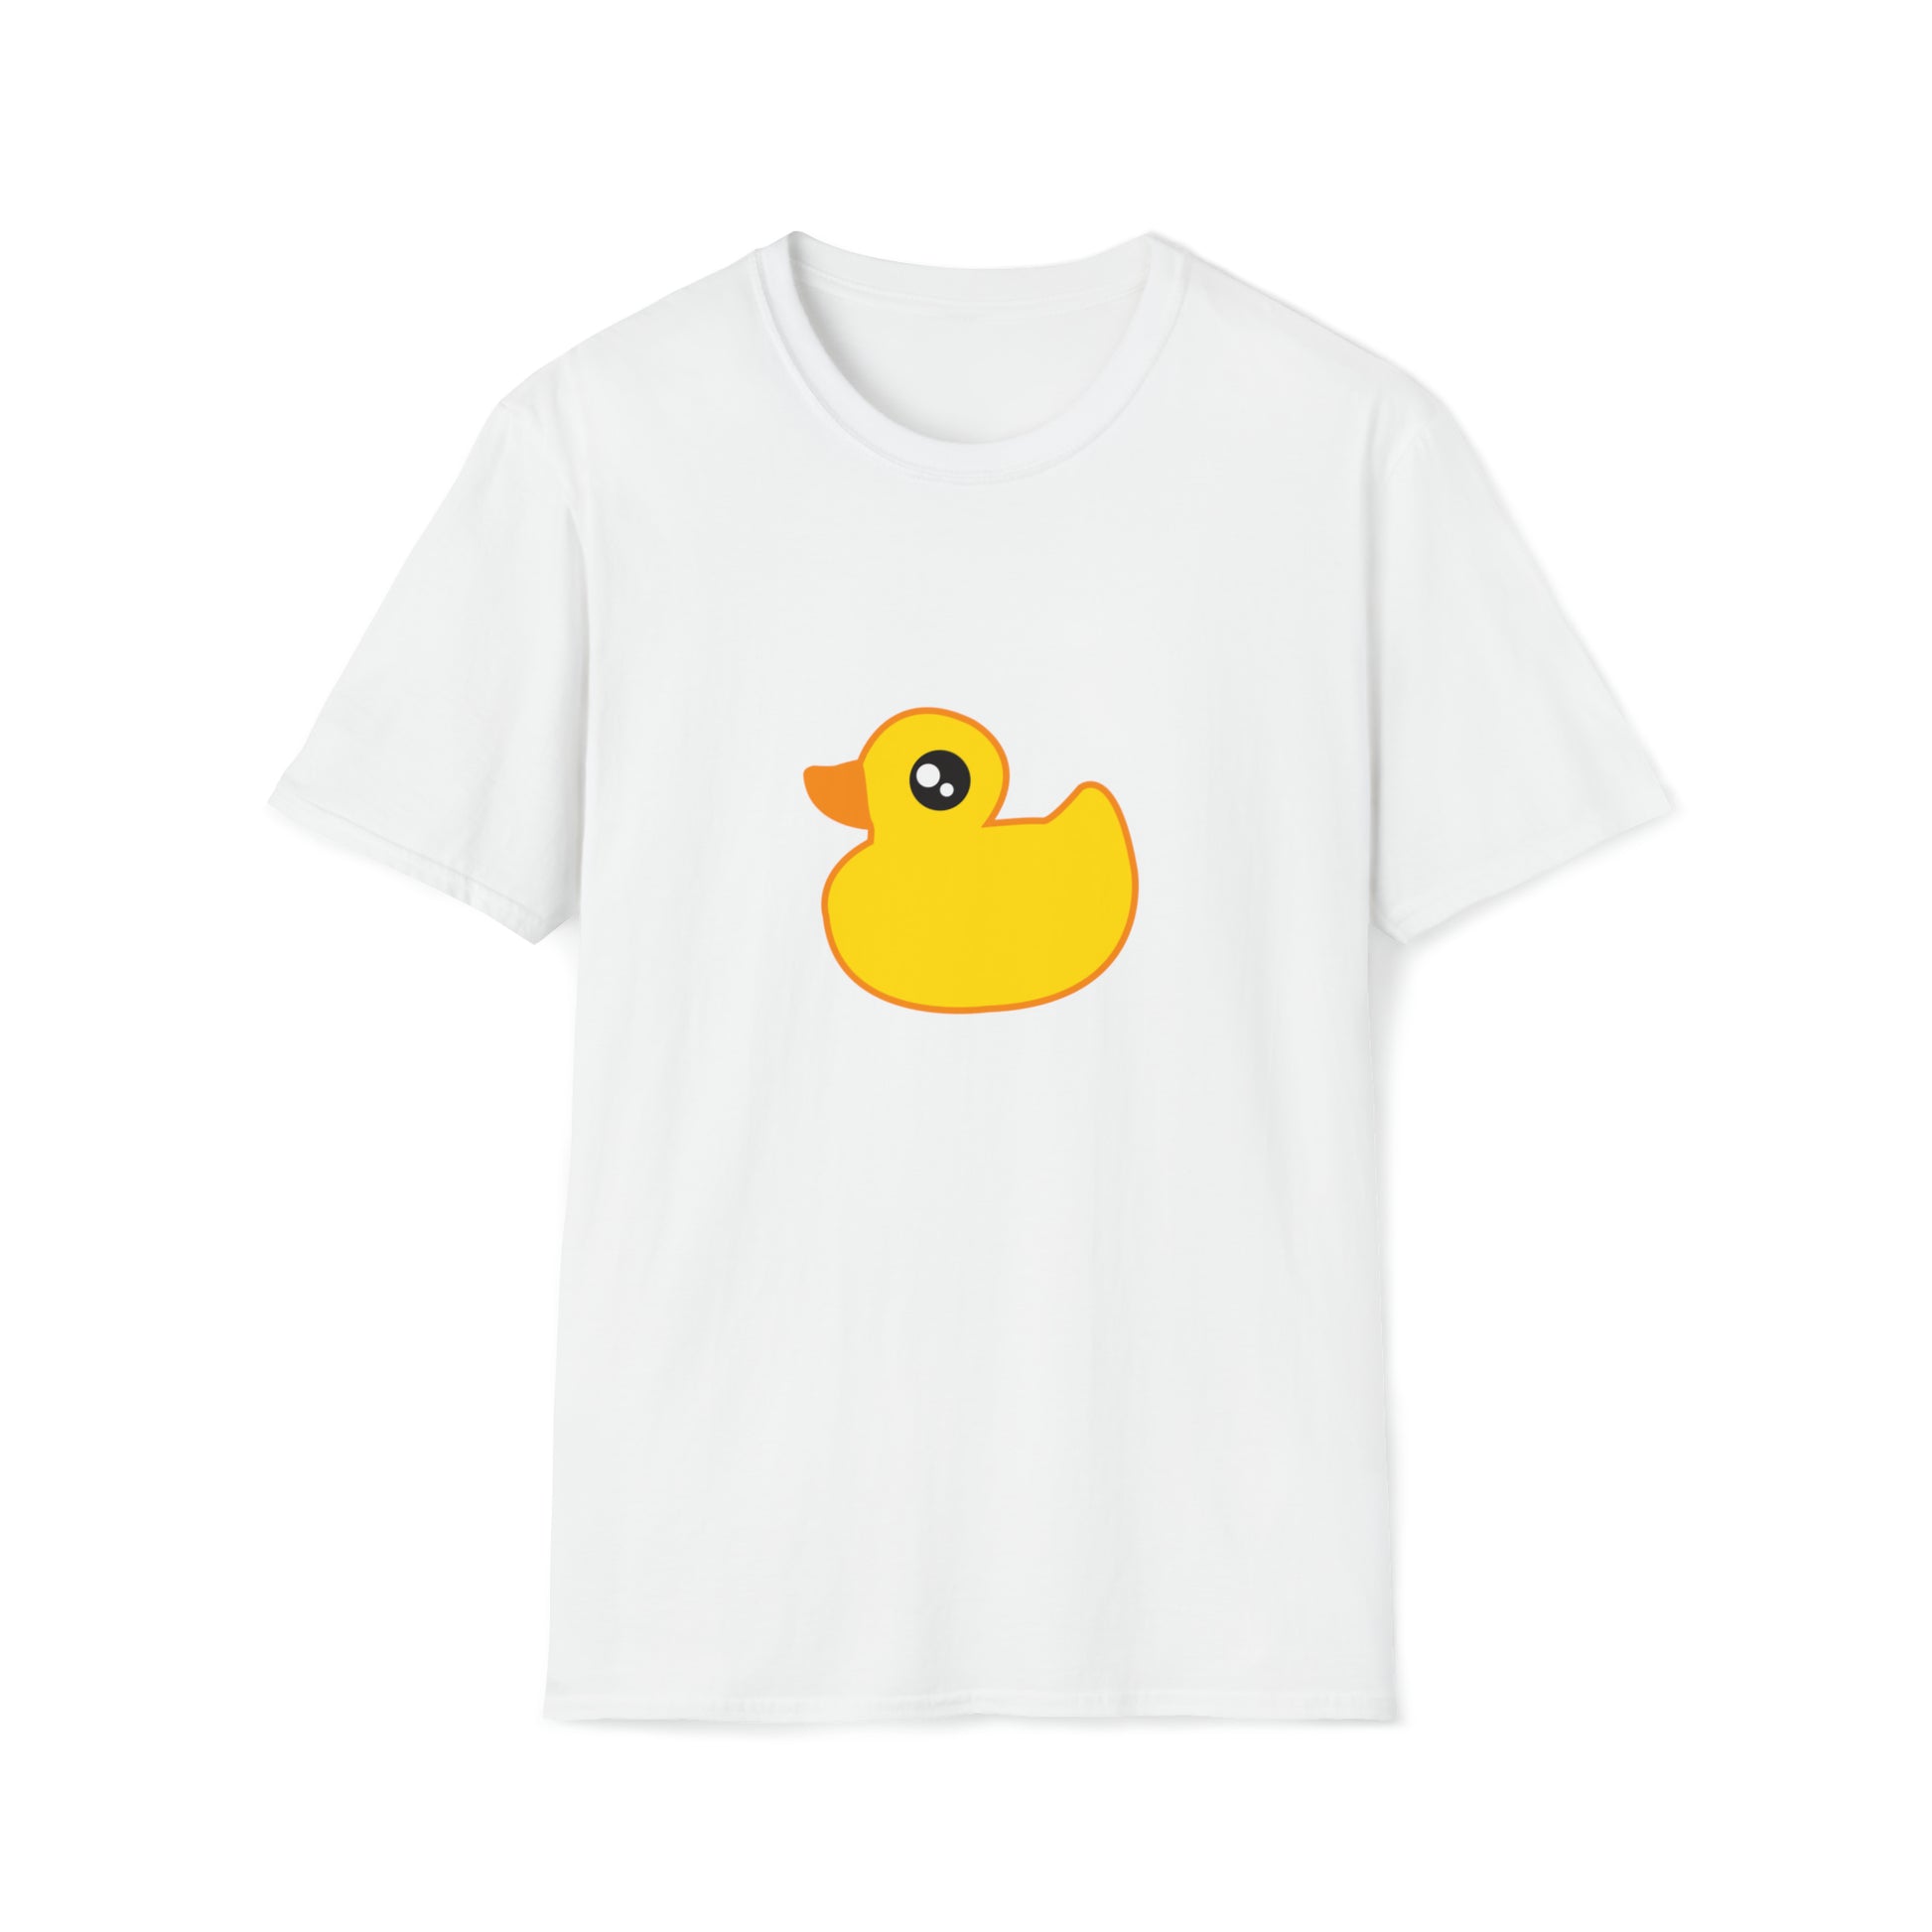 Yellow Rubber Duck white tshirt